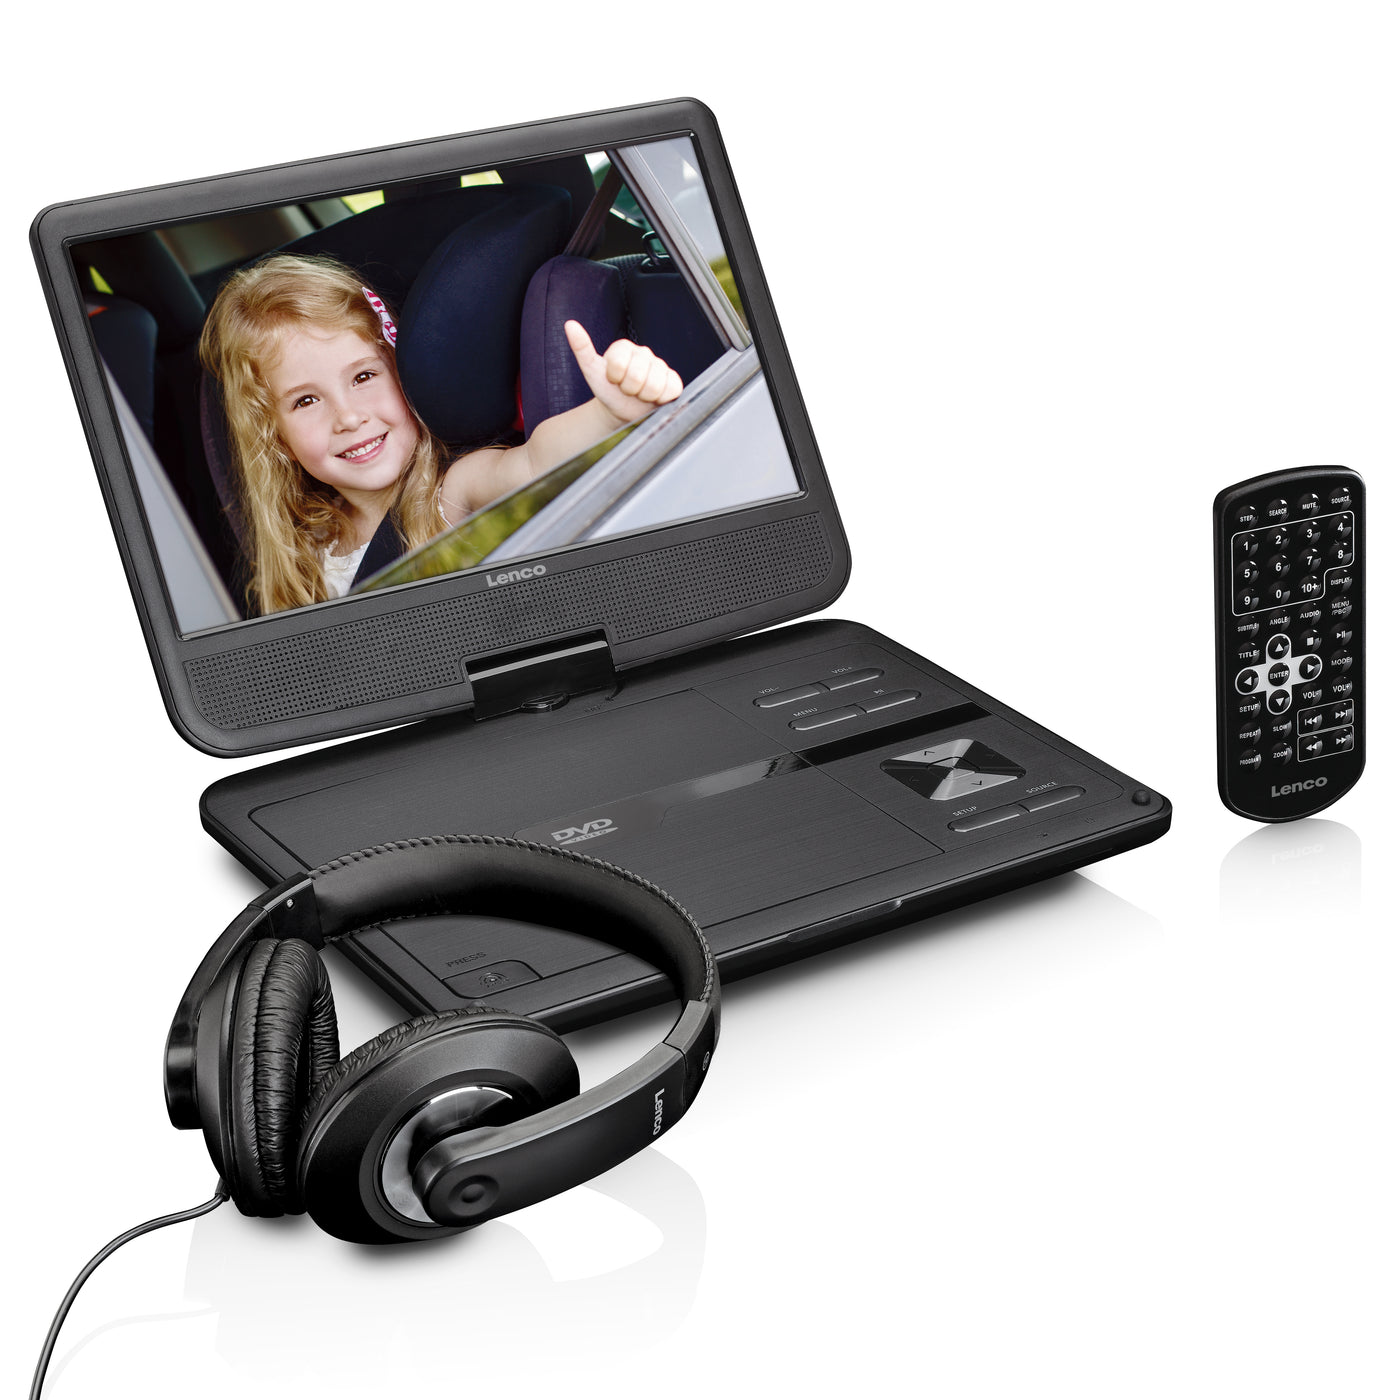 Lenco DVP-1010BK - Lecteur DVD portable de 10 pouces avec connexion USB, casque et dispositif de suspension